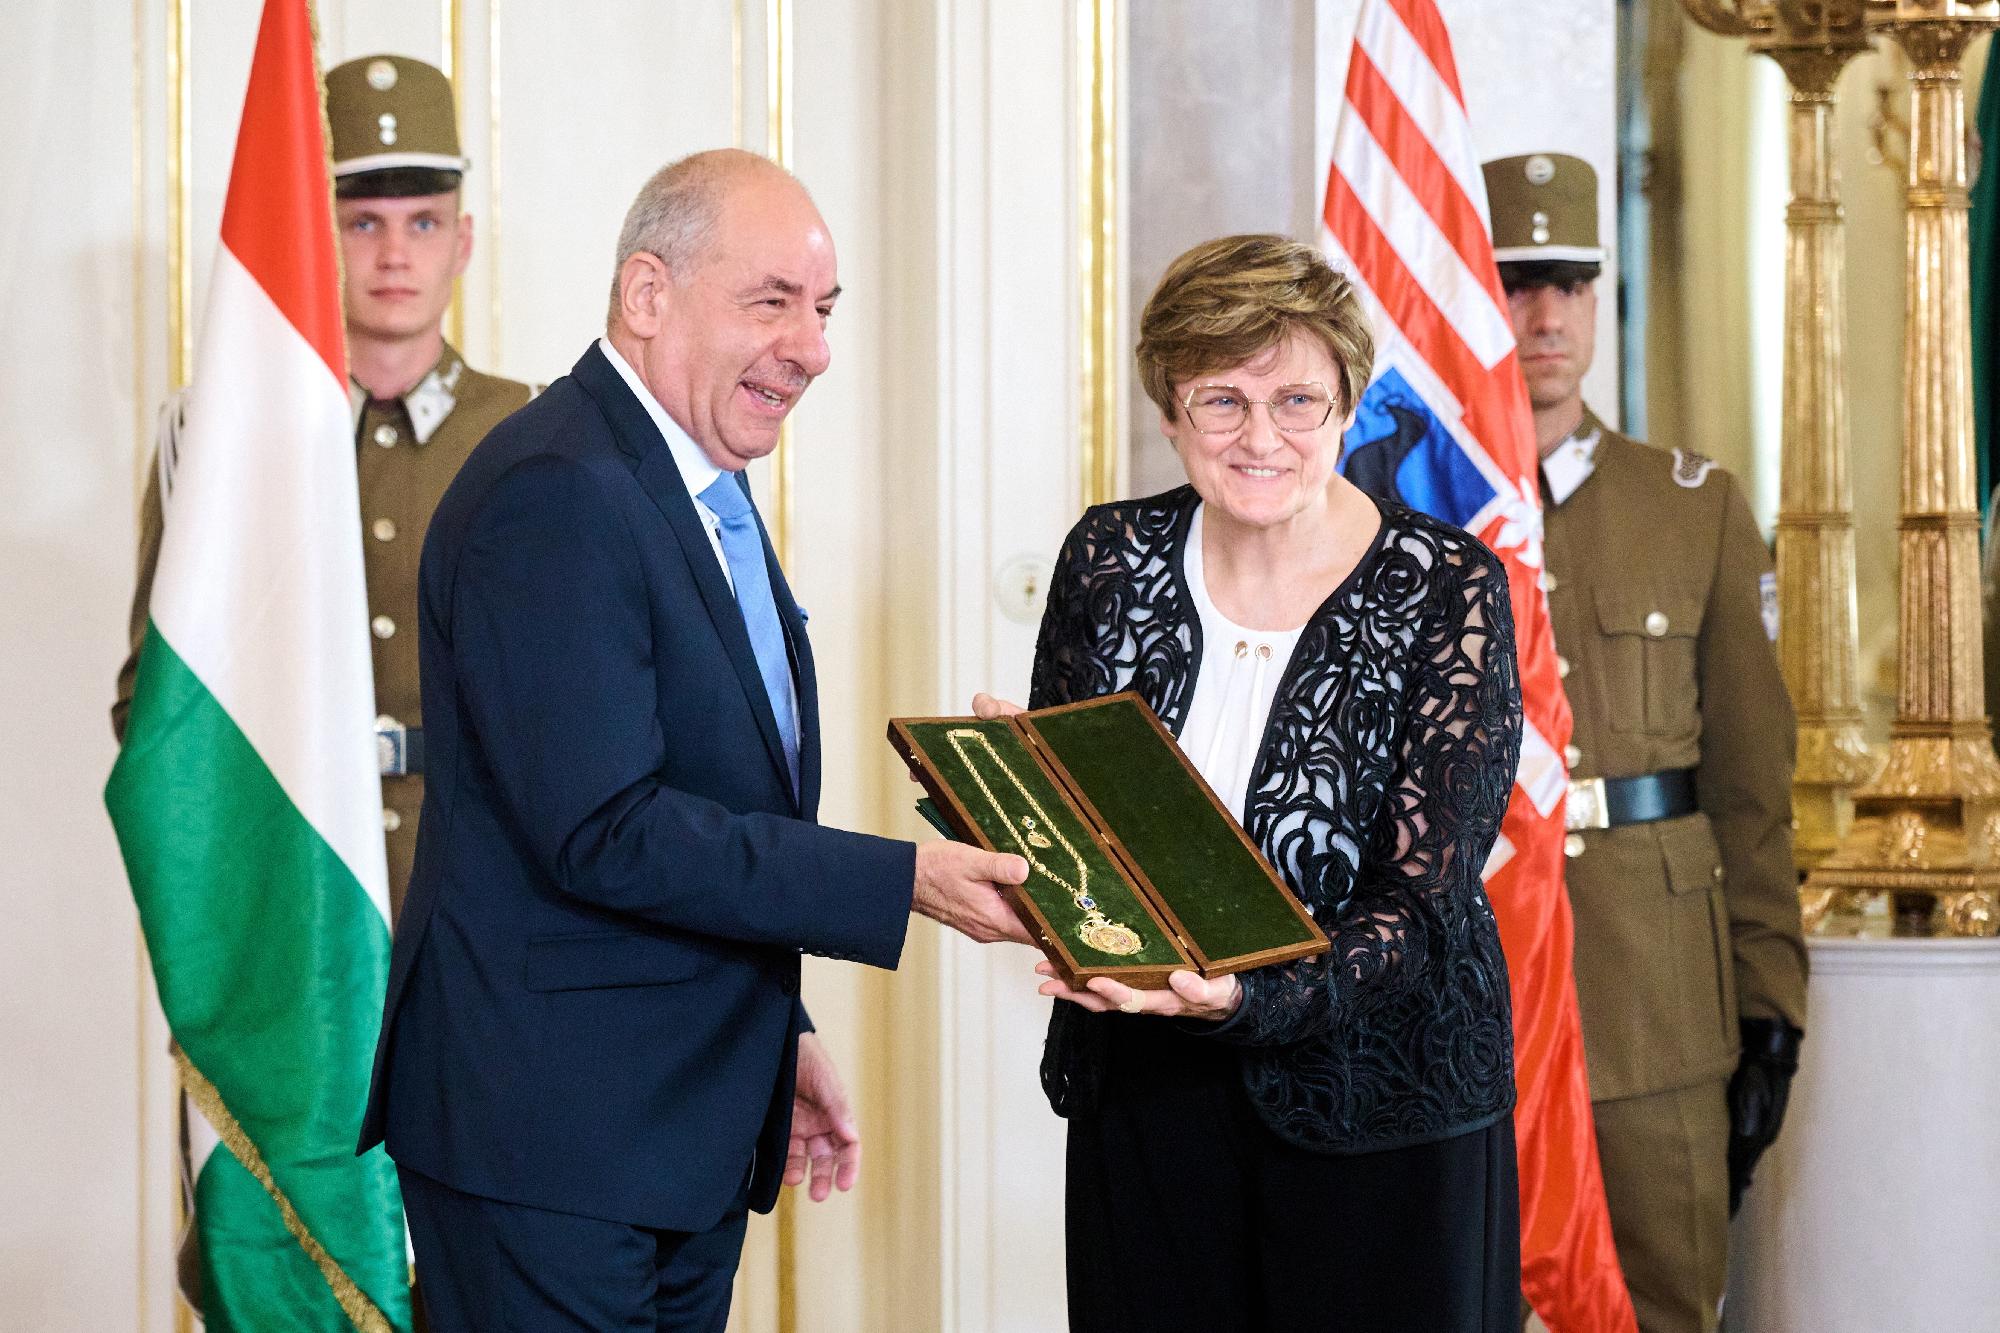 Újabb magas rangú kitüntetésben részesült a két magyar Nobel-díjas tudós